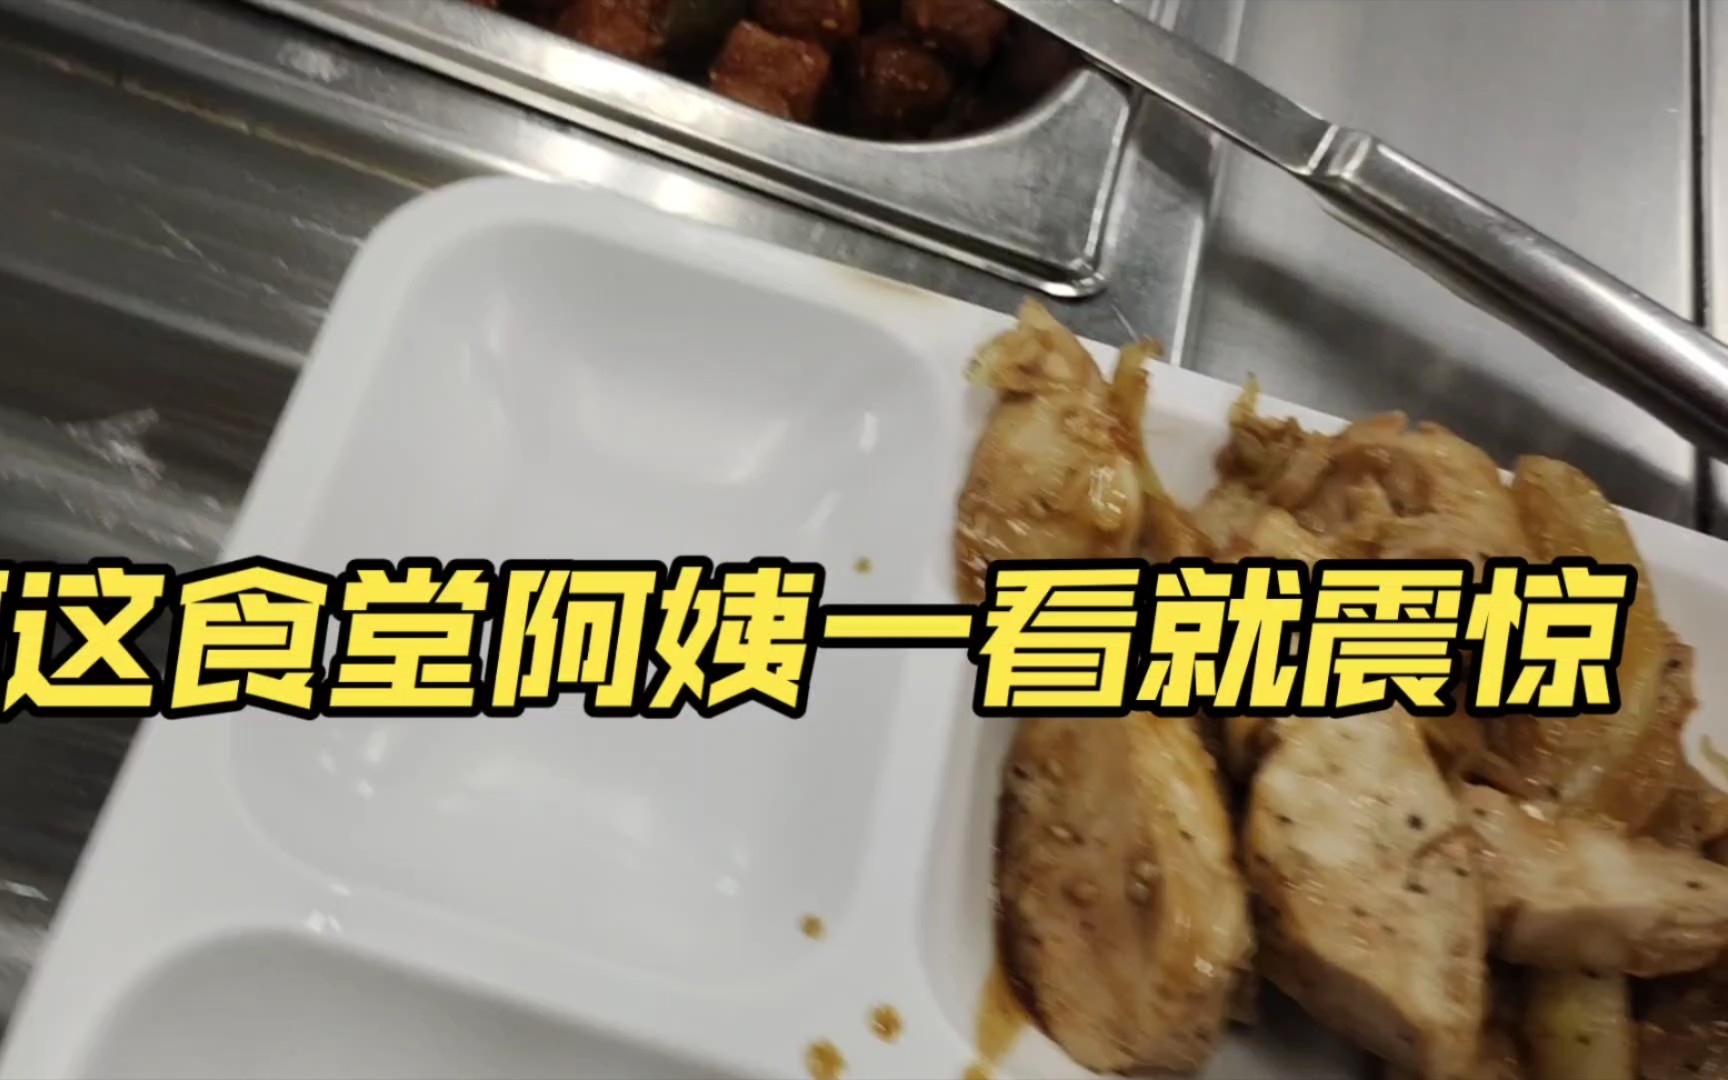 韩国大学食堂阿姨:你是这辈子没见过肉？